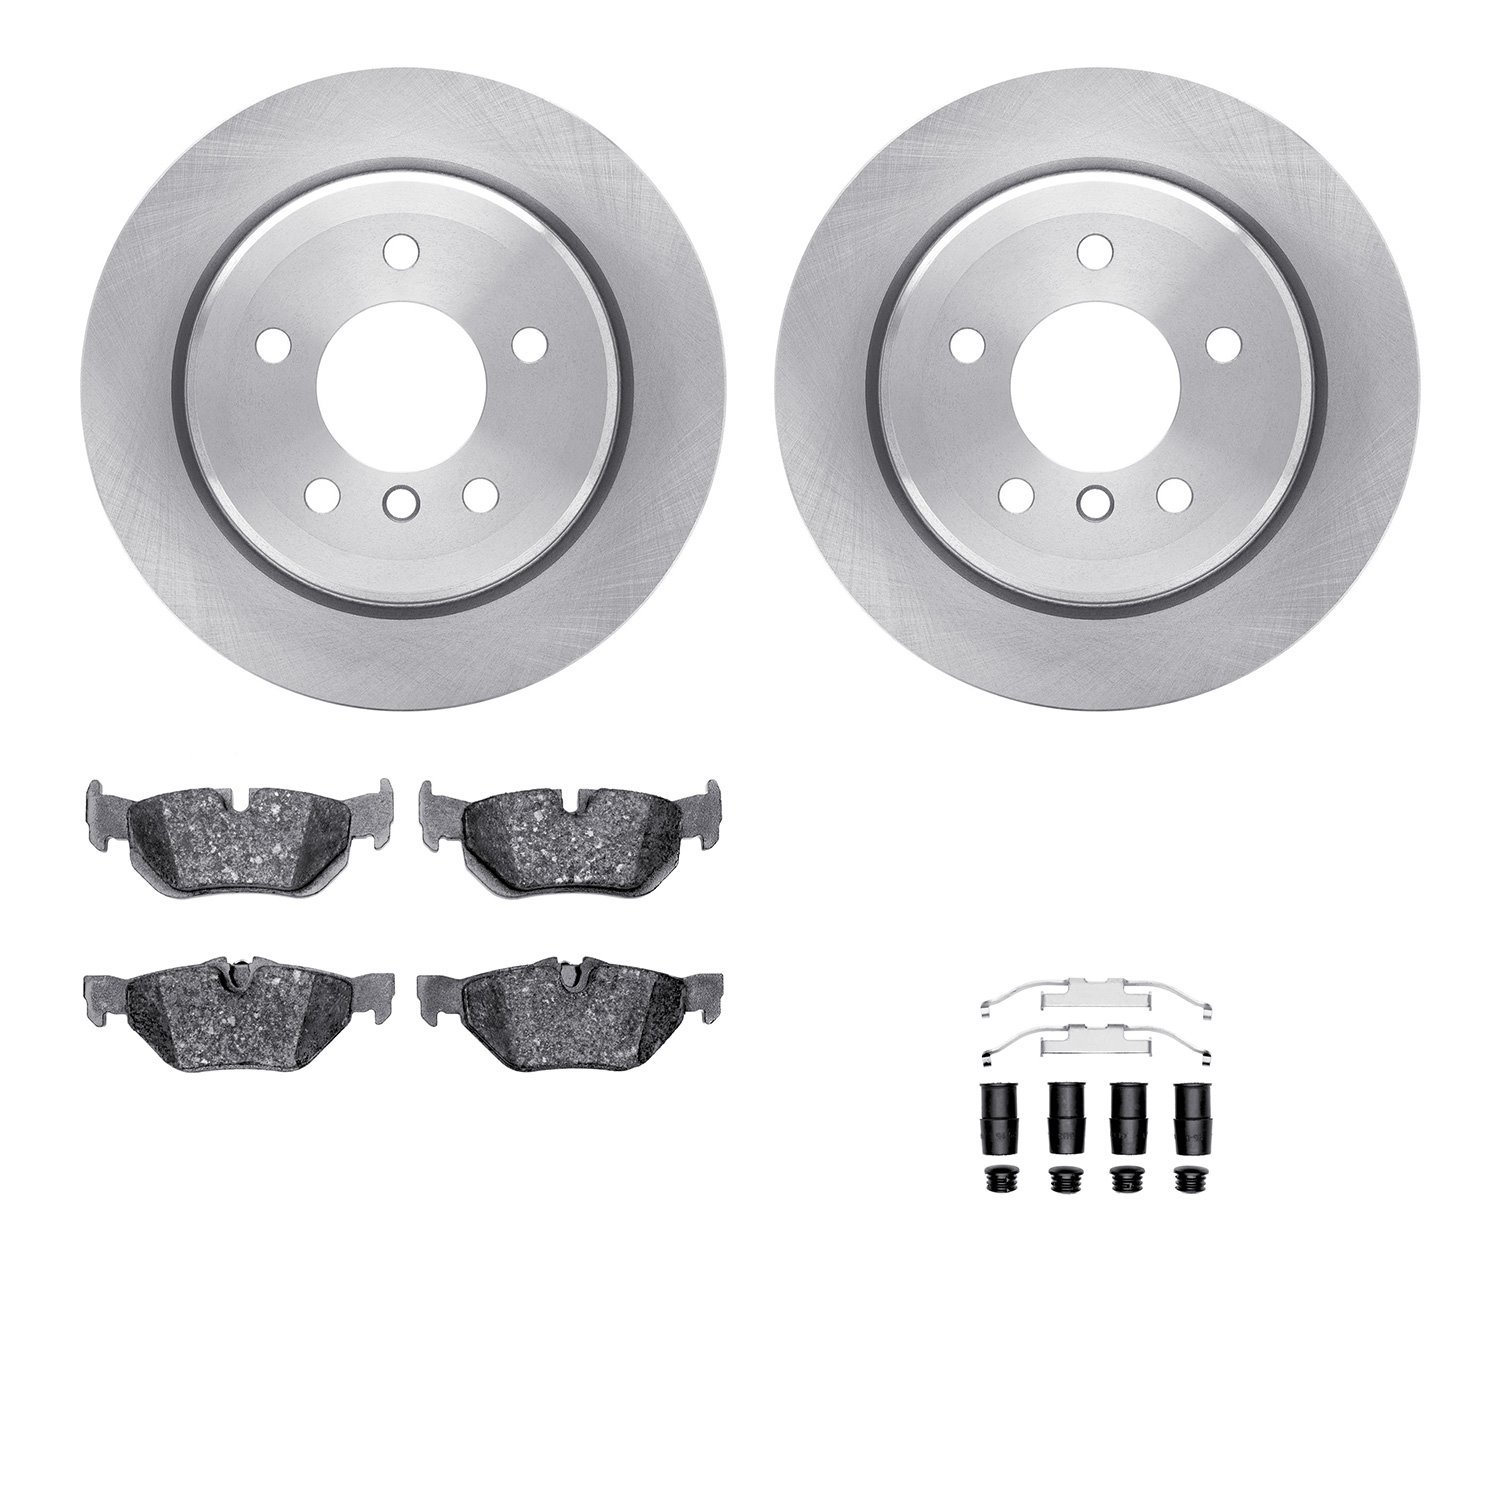 6612-31288 Brake Rotors w/5000 Euro Ceramic Brake Pads Kit with Hardware, 2006-2015 BMW, Position: Rear